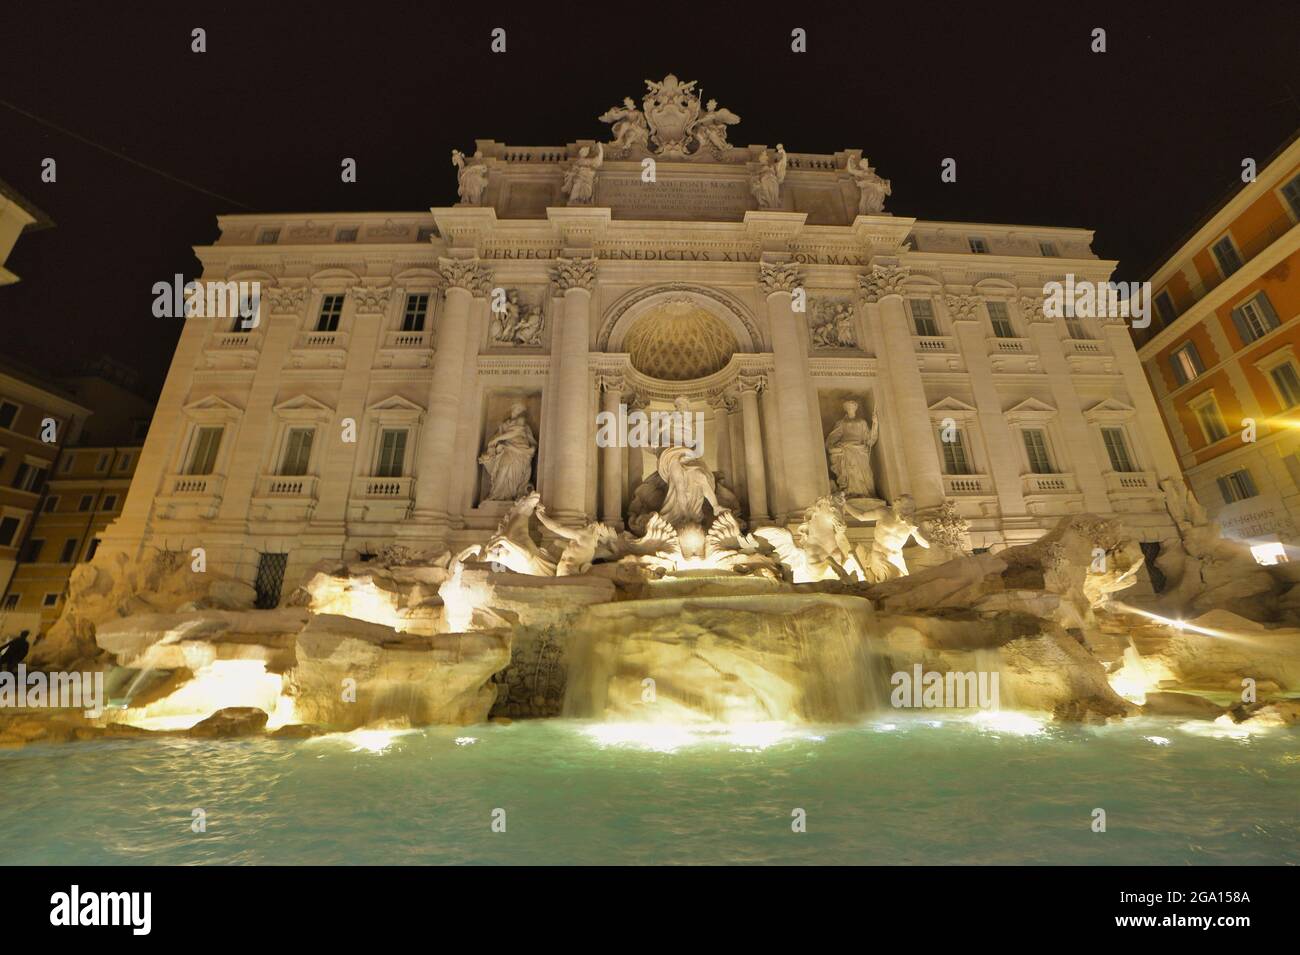 Vue nocturne de la fontaine de Trevi (Fontana di Trevi) la plus célèbre fontaine de Rome. Banque D'Images